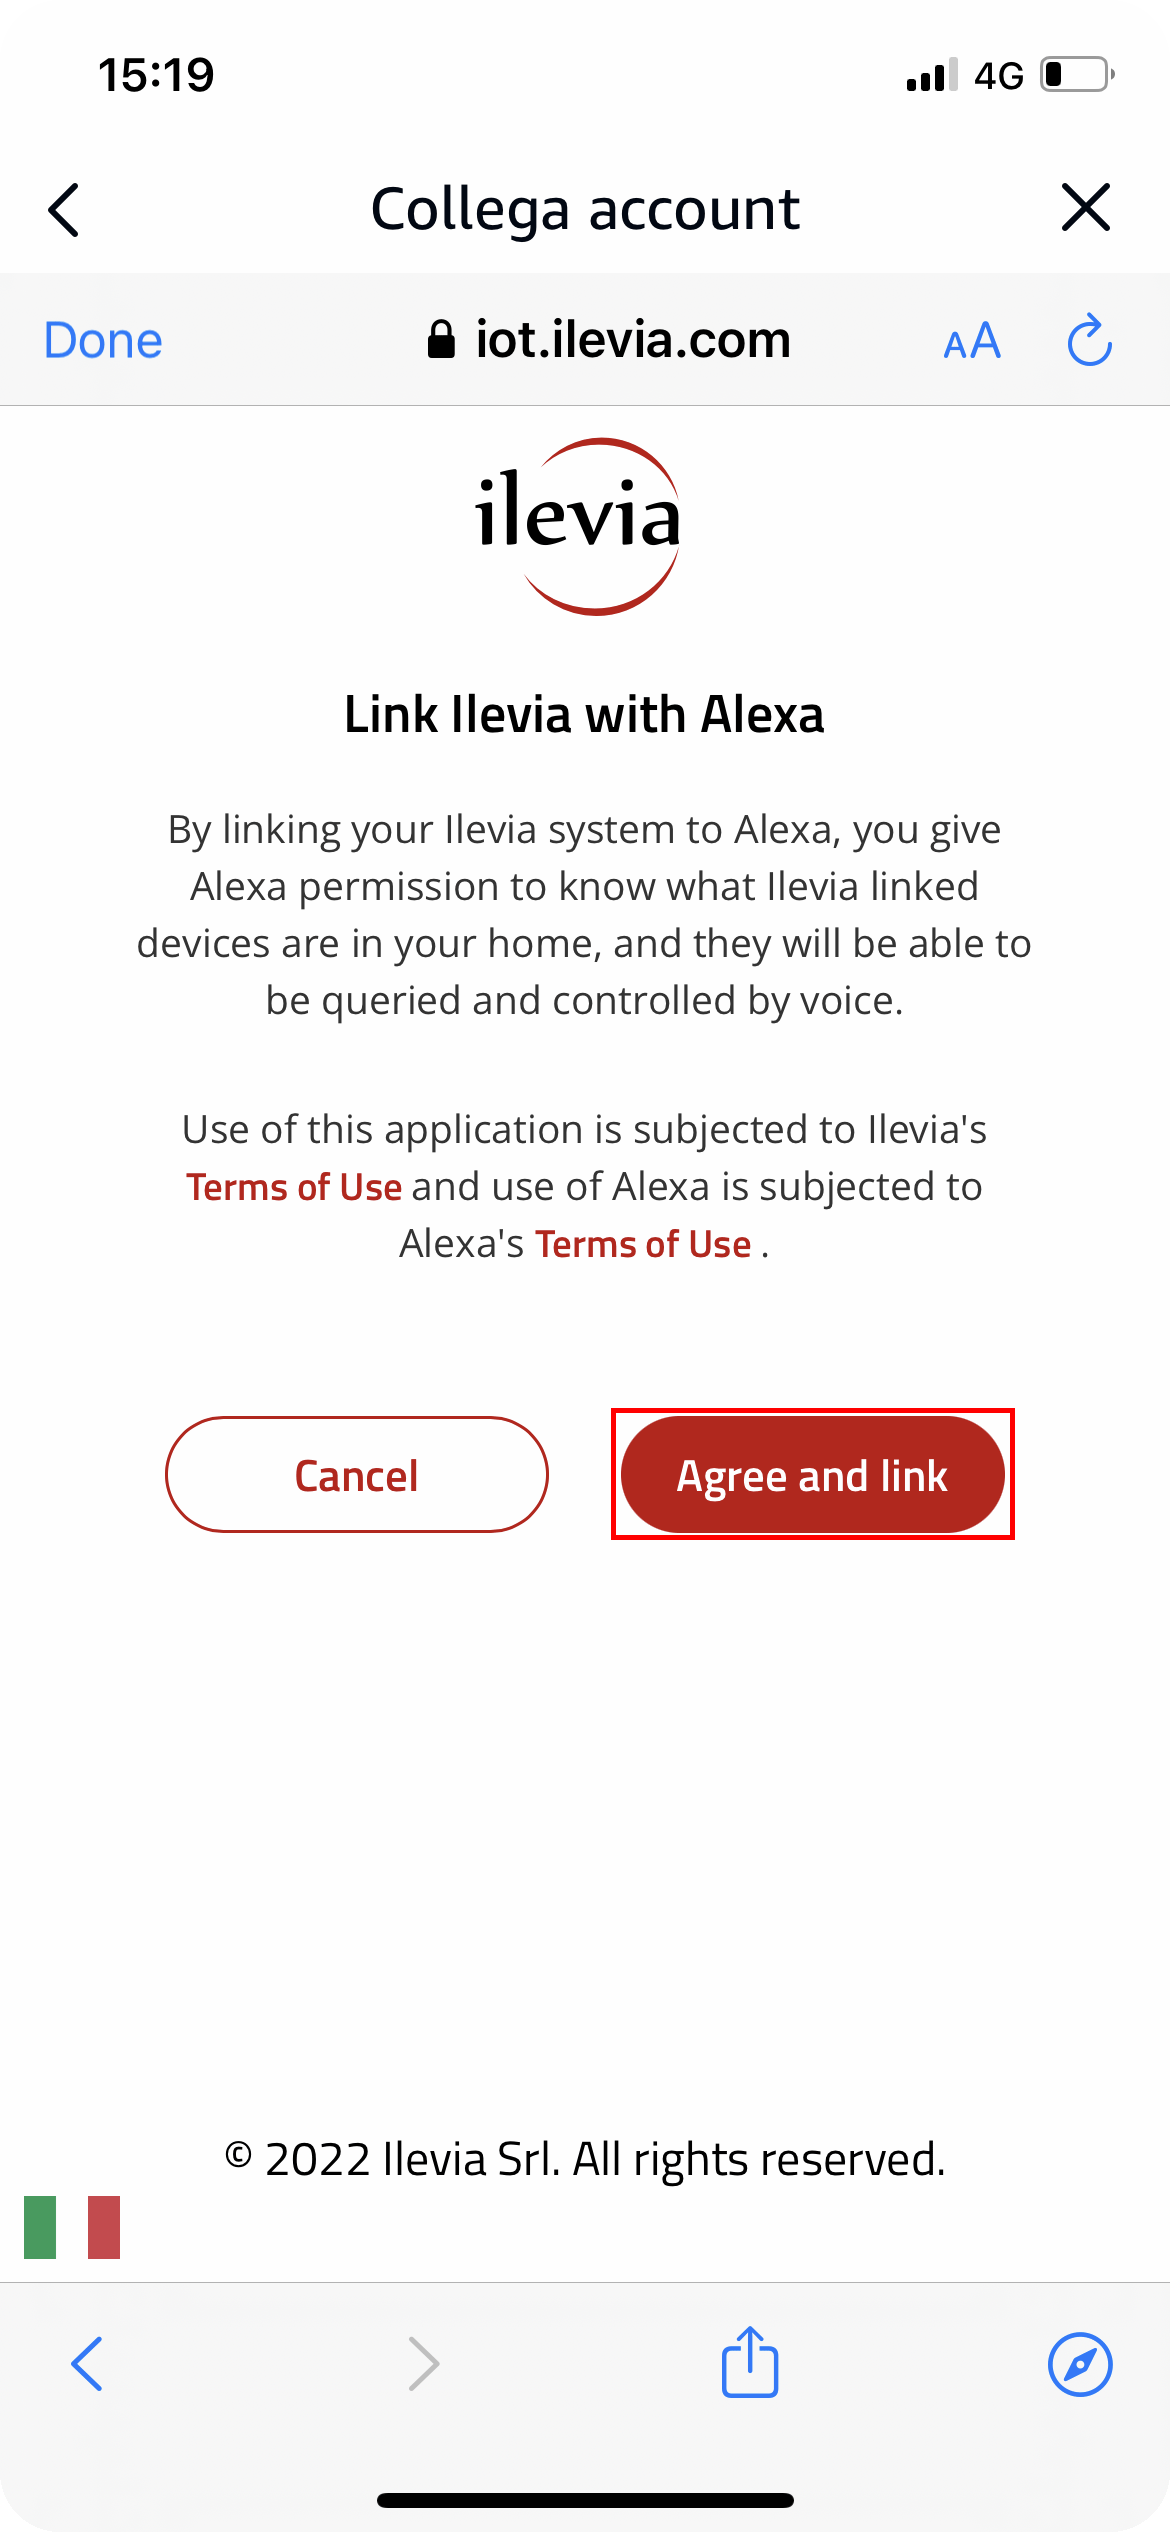 Ilevia skill agreement with Amazon Alexa